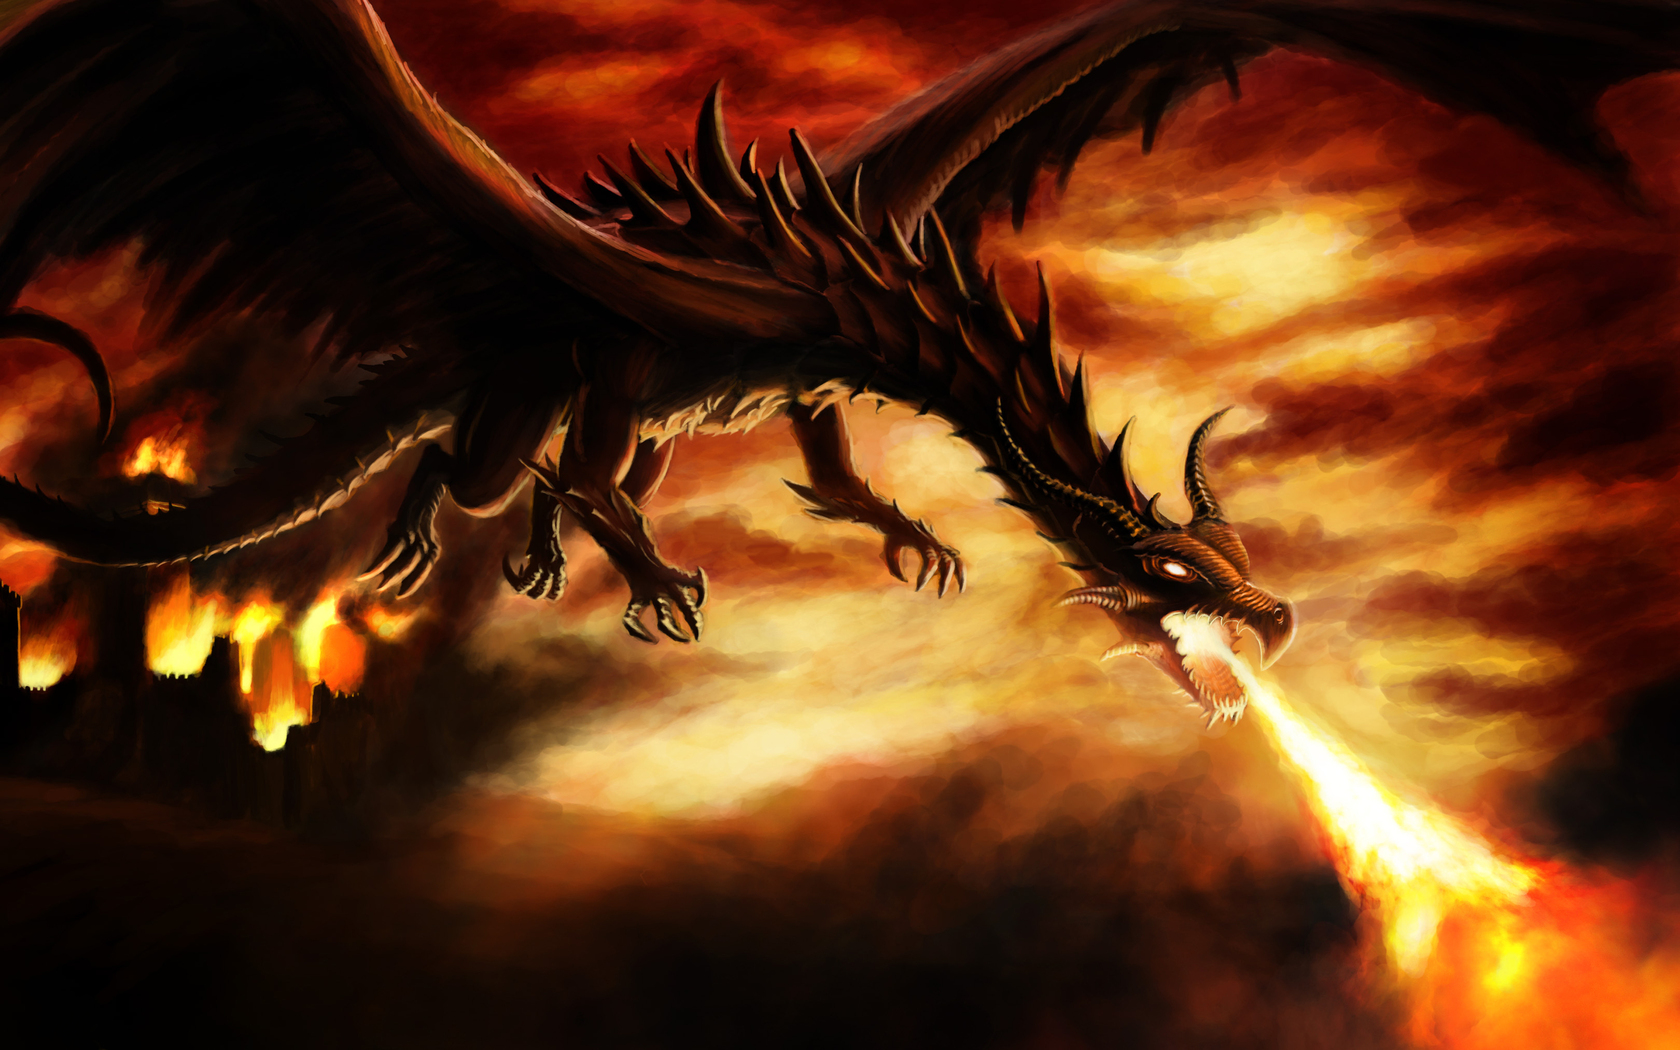 dragones fondos de pantalla hd,continuar,cg artwork,demonio,personaje de ficción,fuego